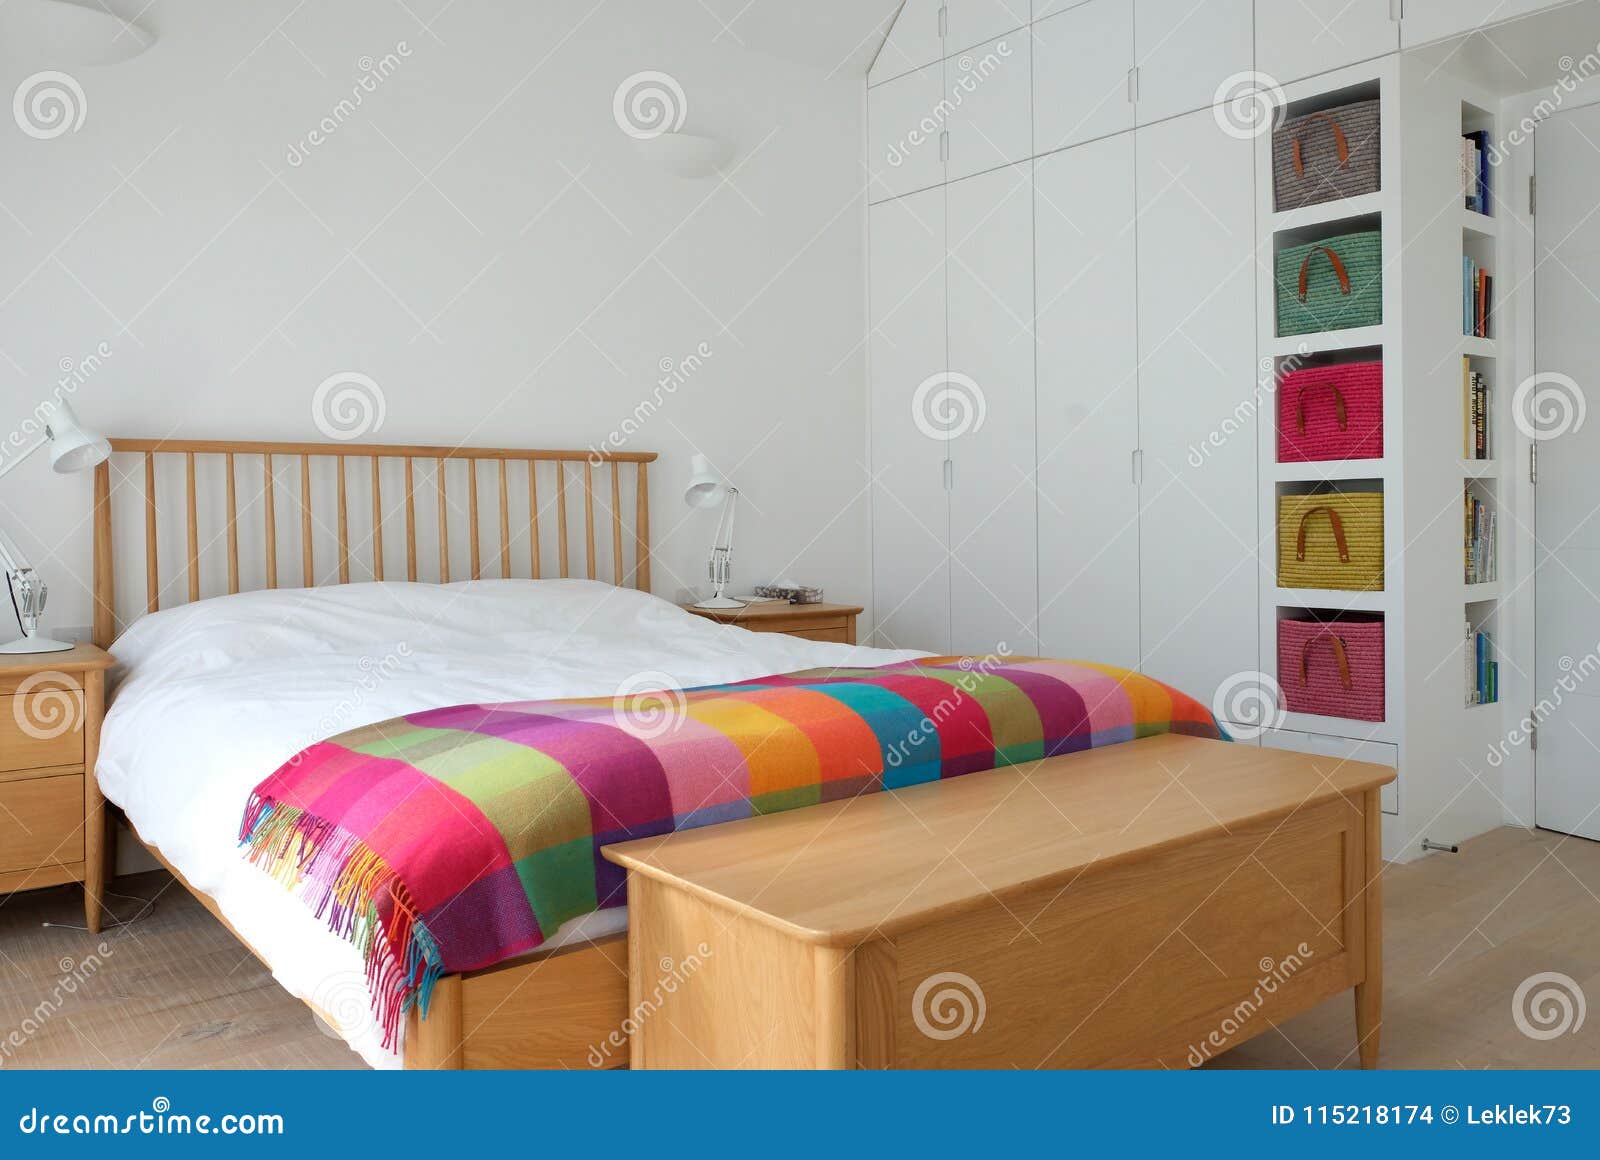 Scandinavian Inspired Bedroom Interior Showing Wooden Bedroom